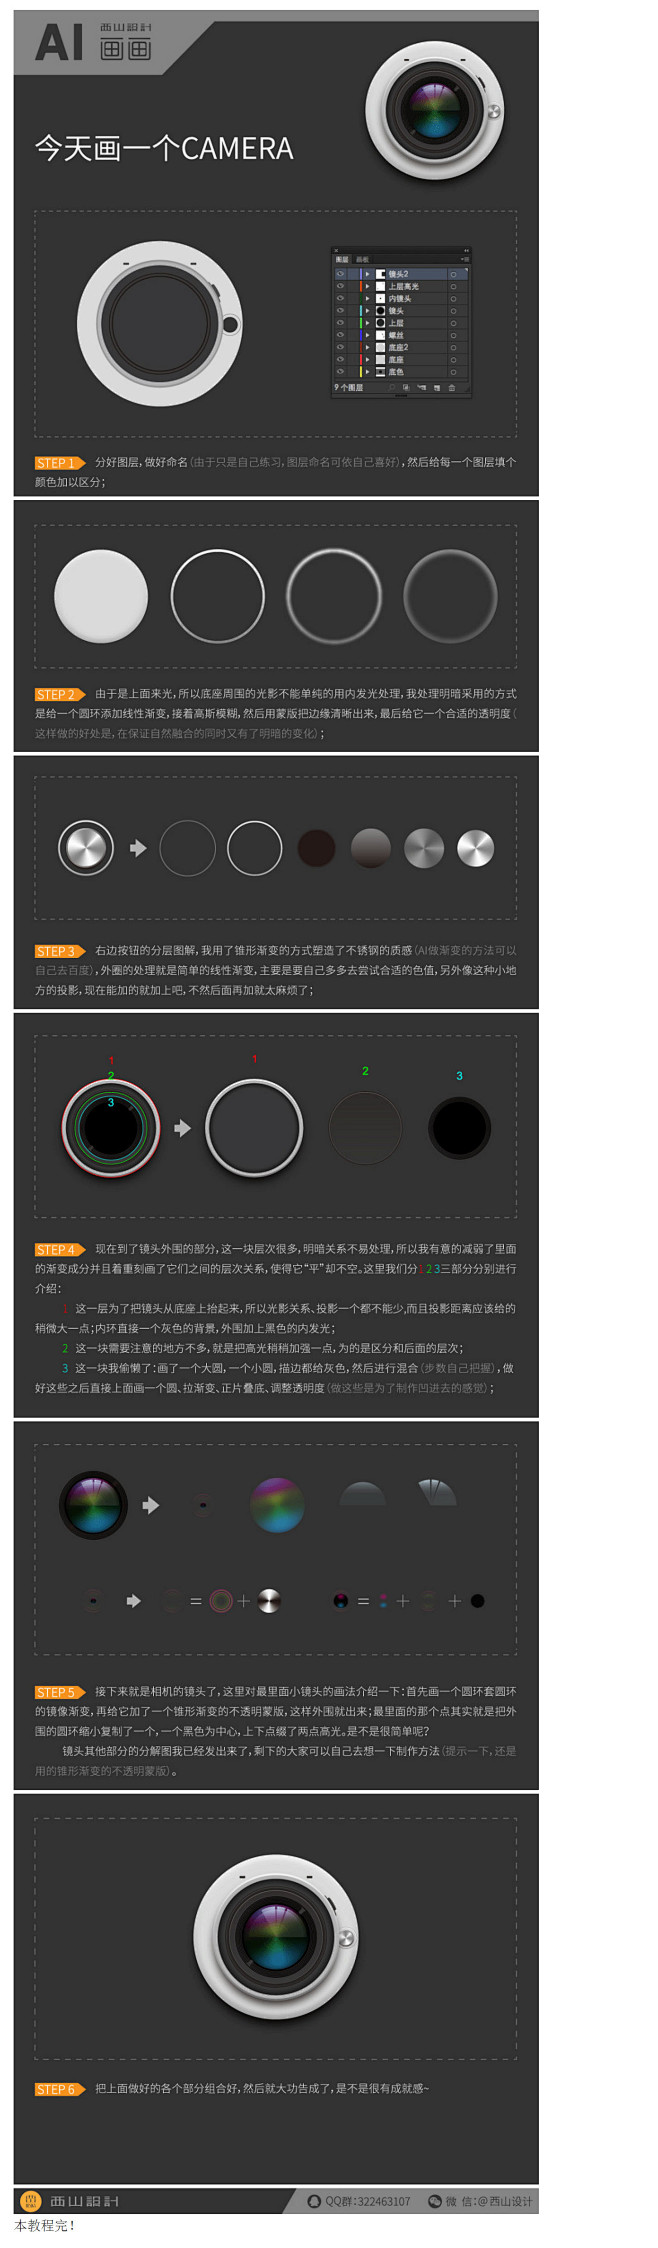 AI设计相机UI图标(3)_UI设计教程...